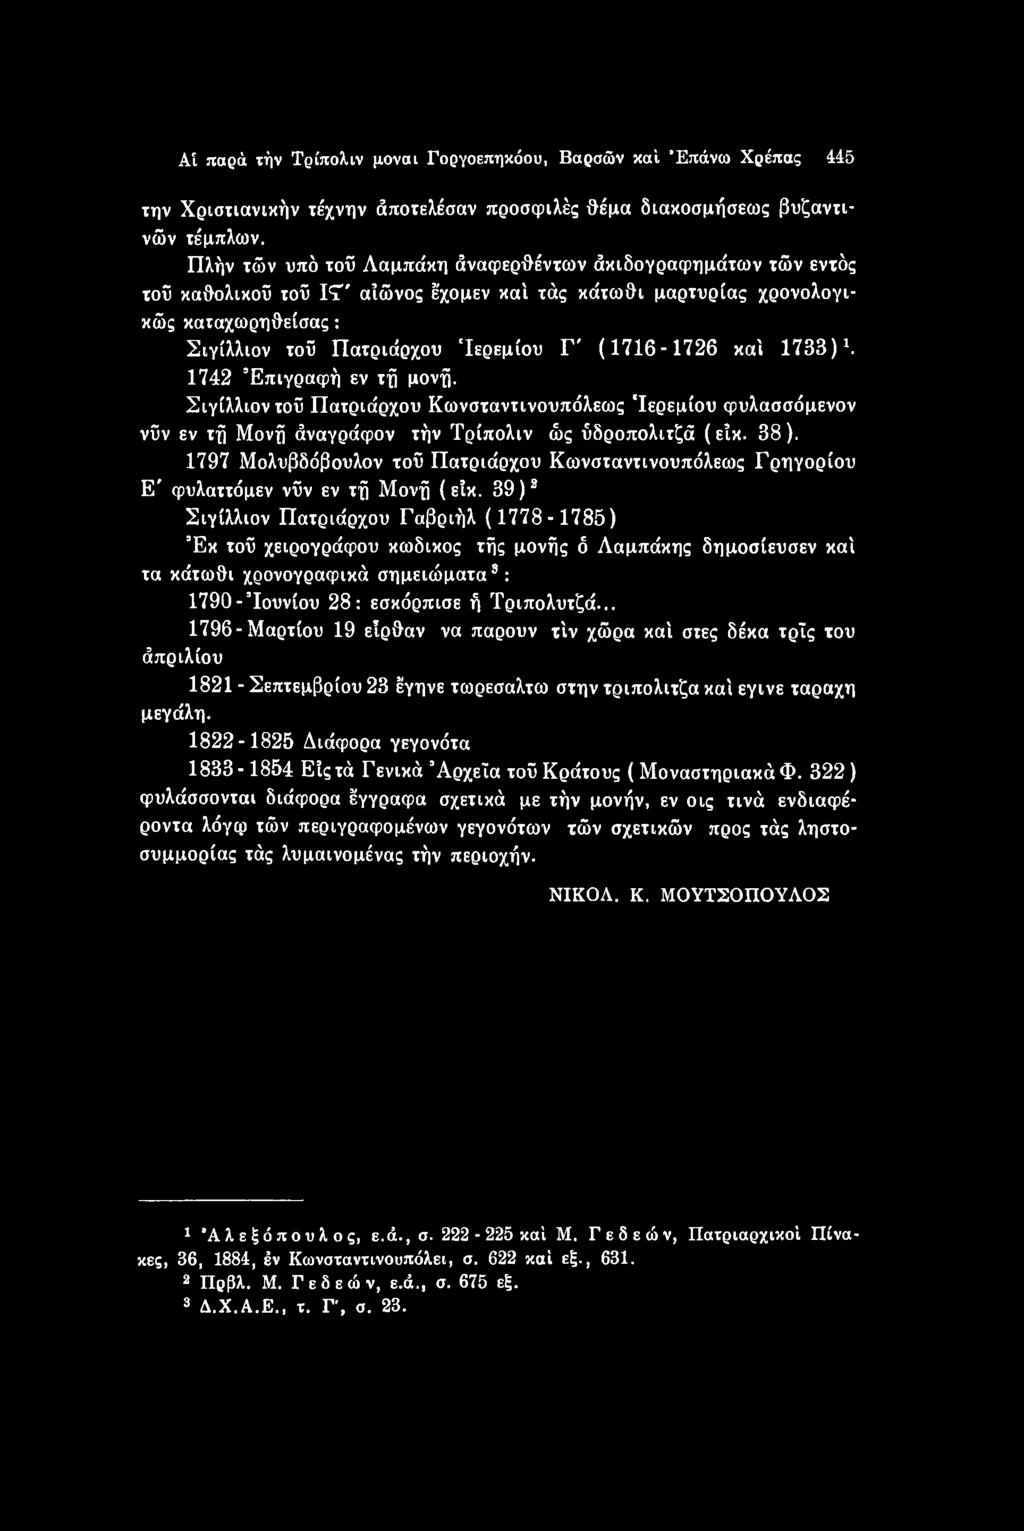 39)2 3 Σιγίλλιον Πατριάρχου Γαβριήλ ( 1778-1785) Έκ τοϋ χειρογράφου κωδικός τής μονής ό Λαμπάκης δημοσίευσεν καί τα κάτωθι χρονογραφικά σημειώματα8: 1790- Ιουνίου 28: εσκόρπισε ή Τριπολυτζά.